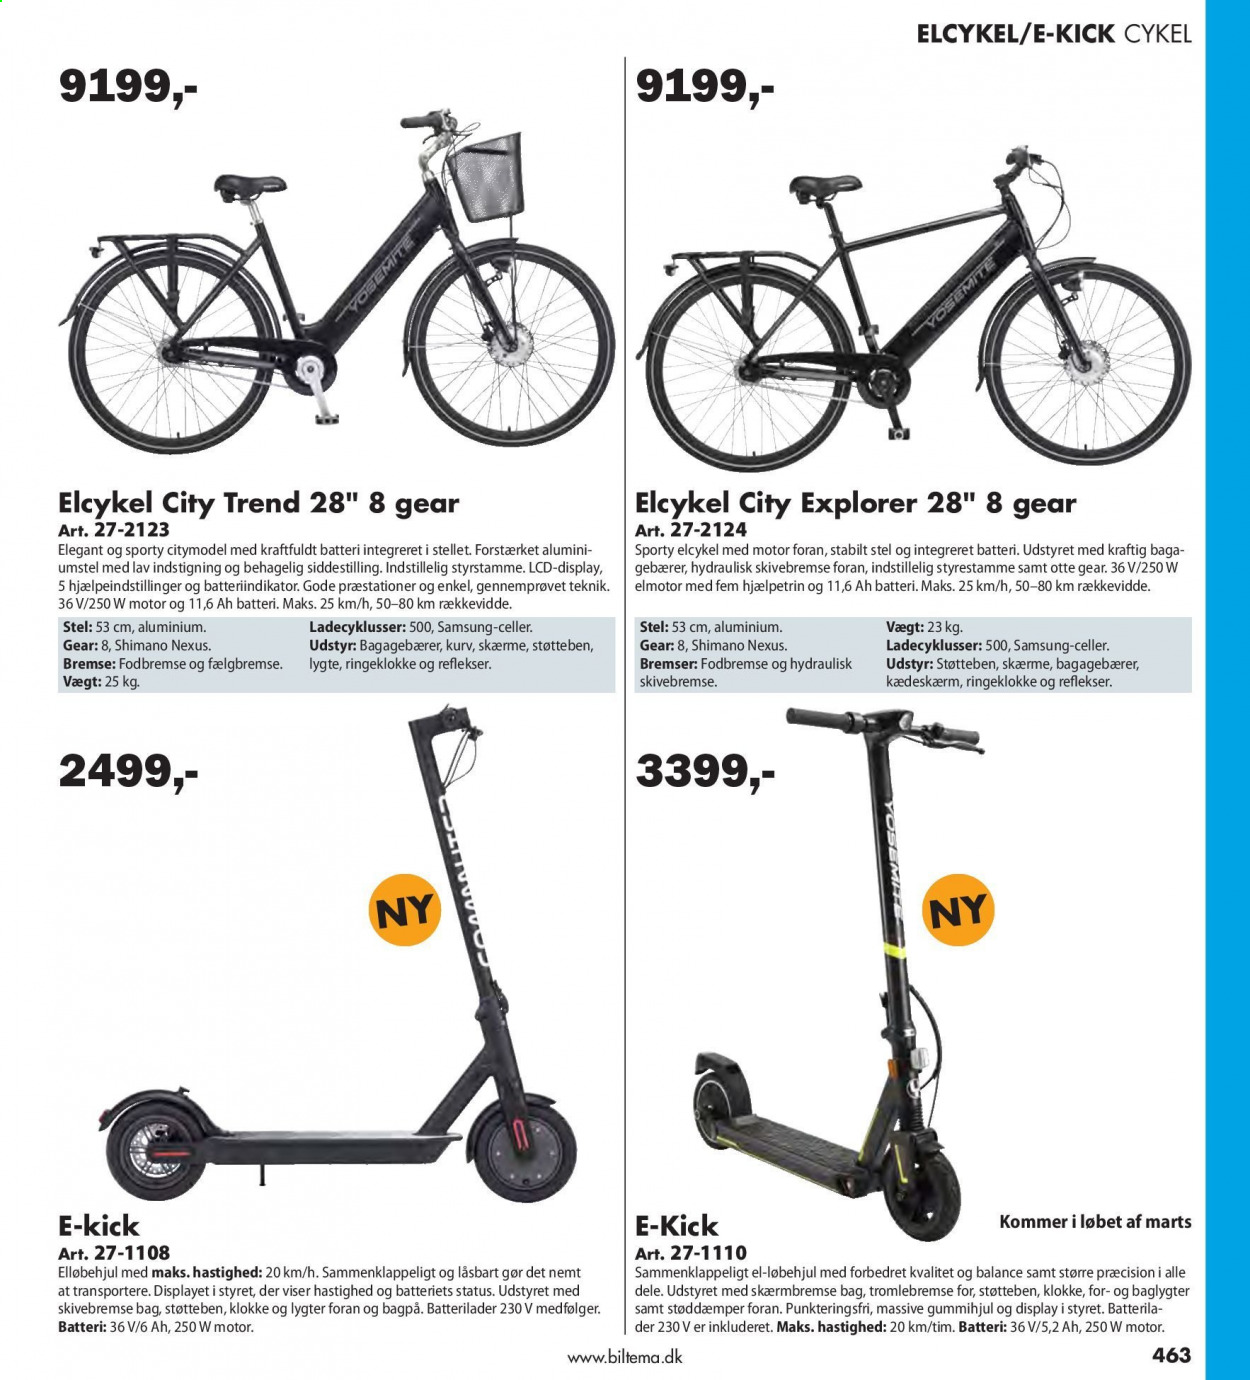 thumbnail - Biltema tilbud  - tilbudsprodukter - Samsung, elektrisk cykel, Shimano, cykel. Side 463.